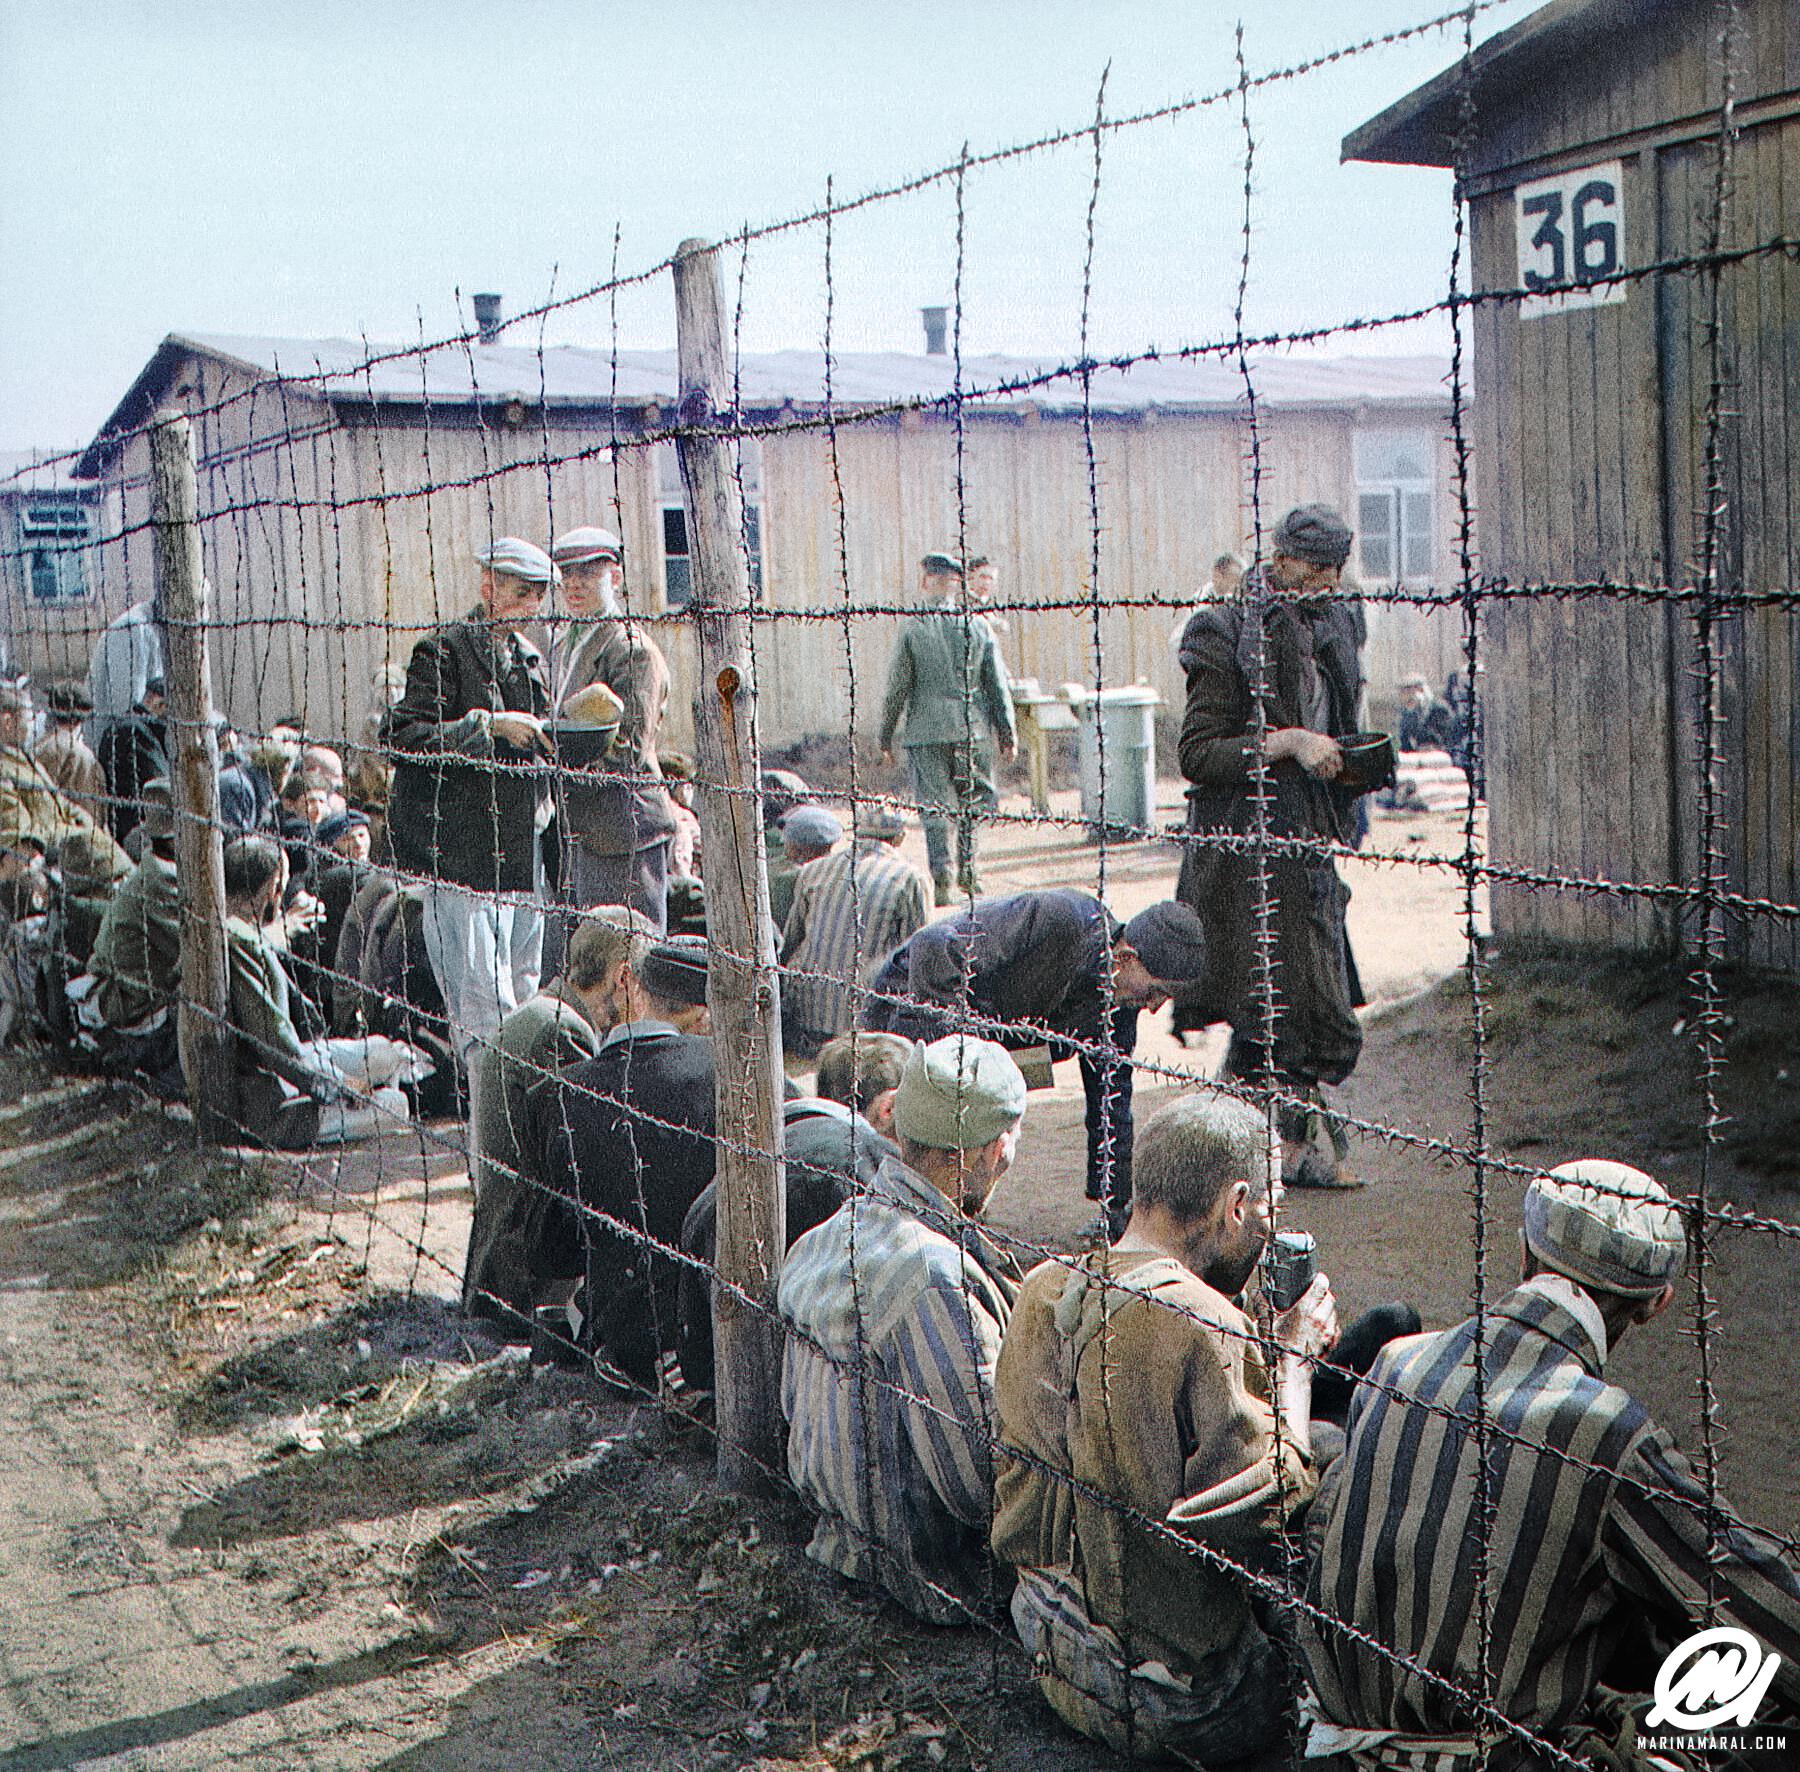 Historic Photo of Prisoners